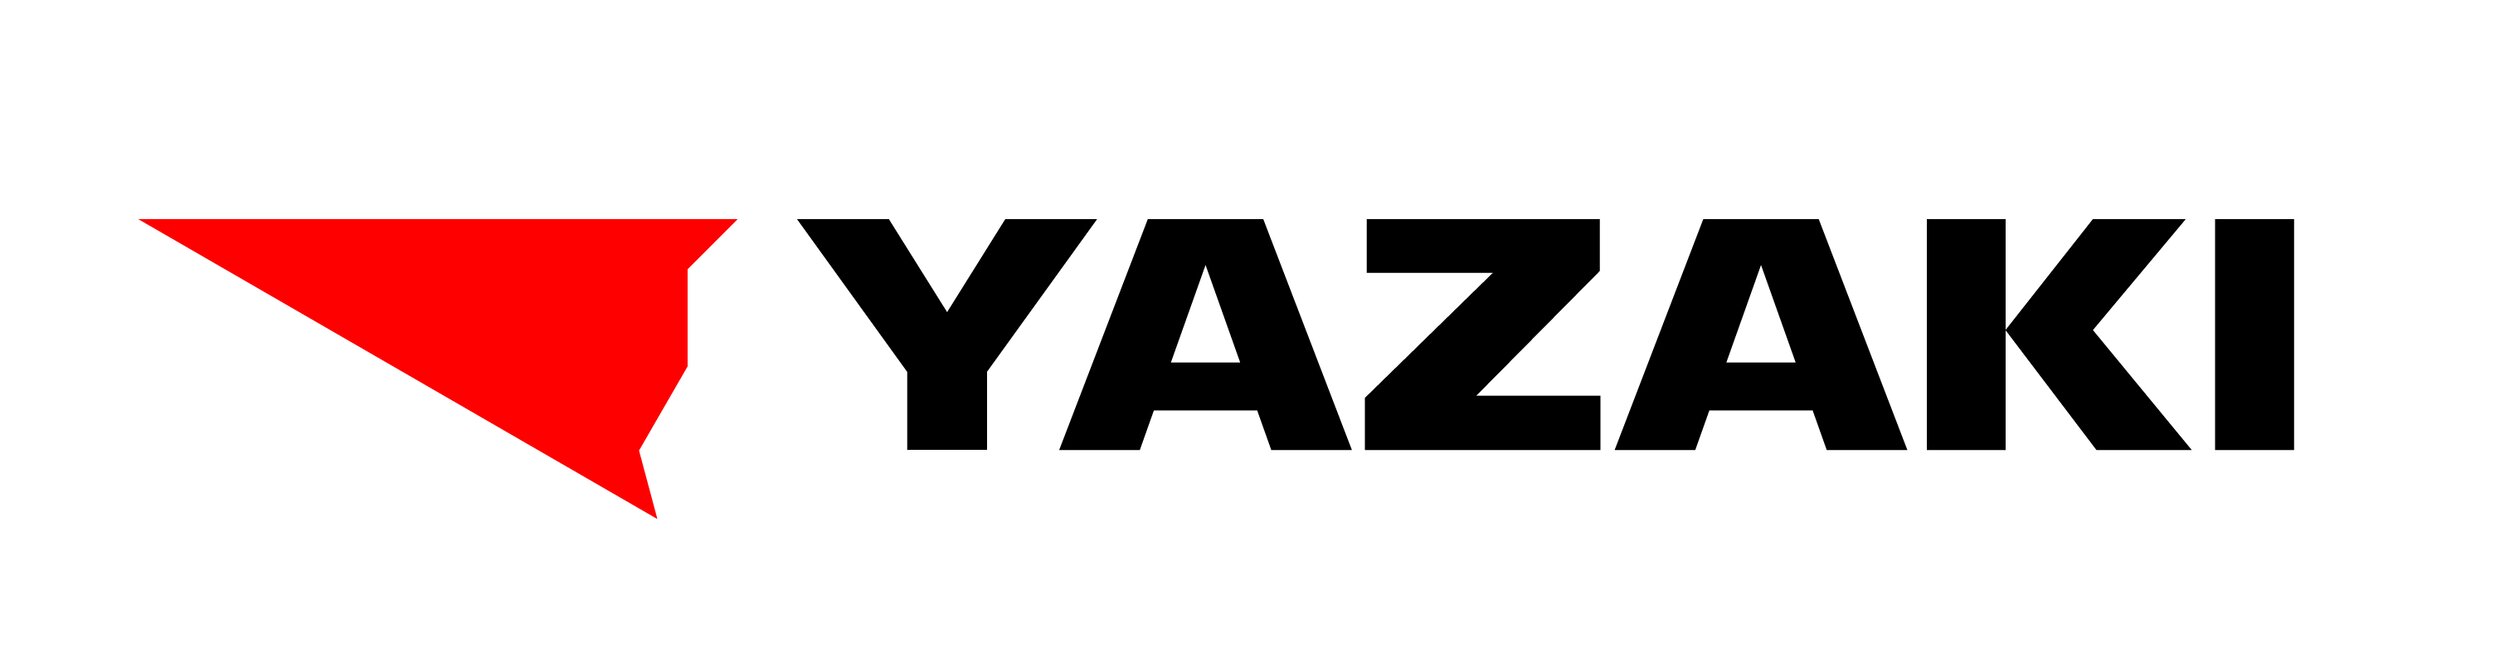 yazaki logo.jpg